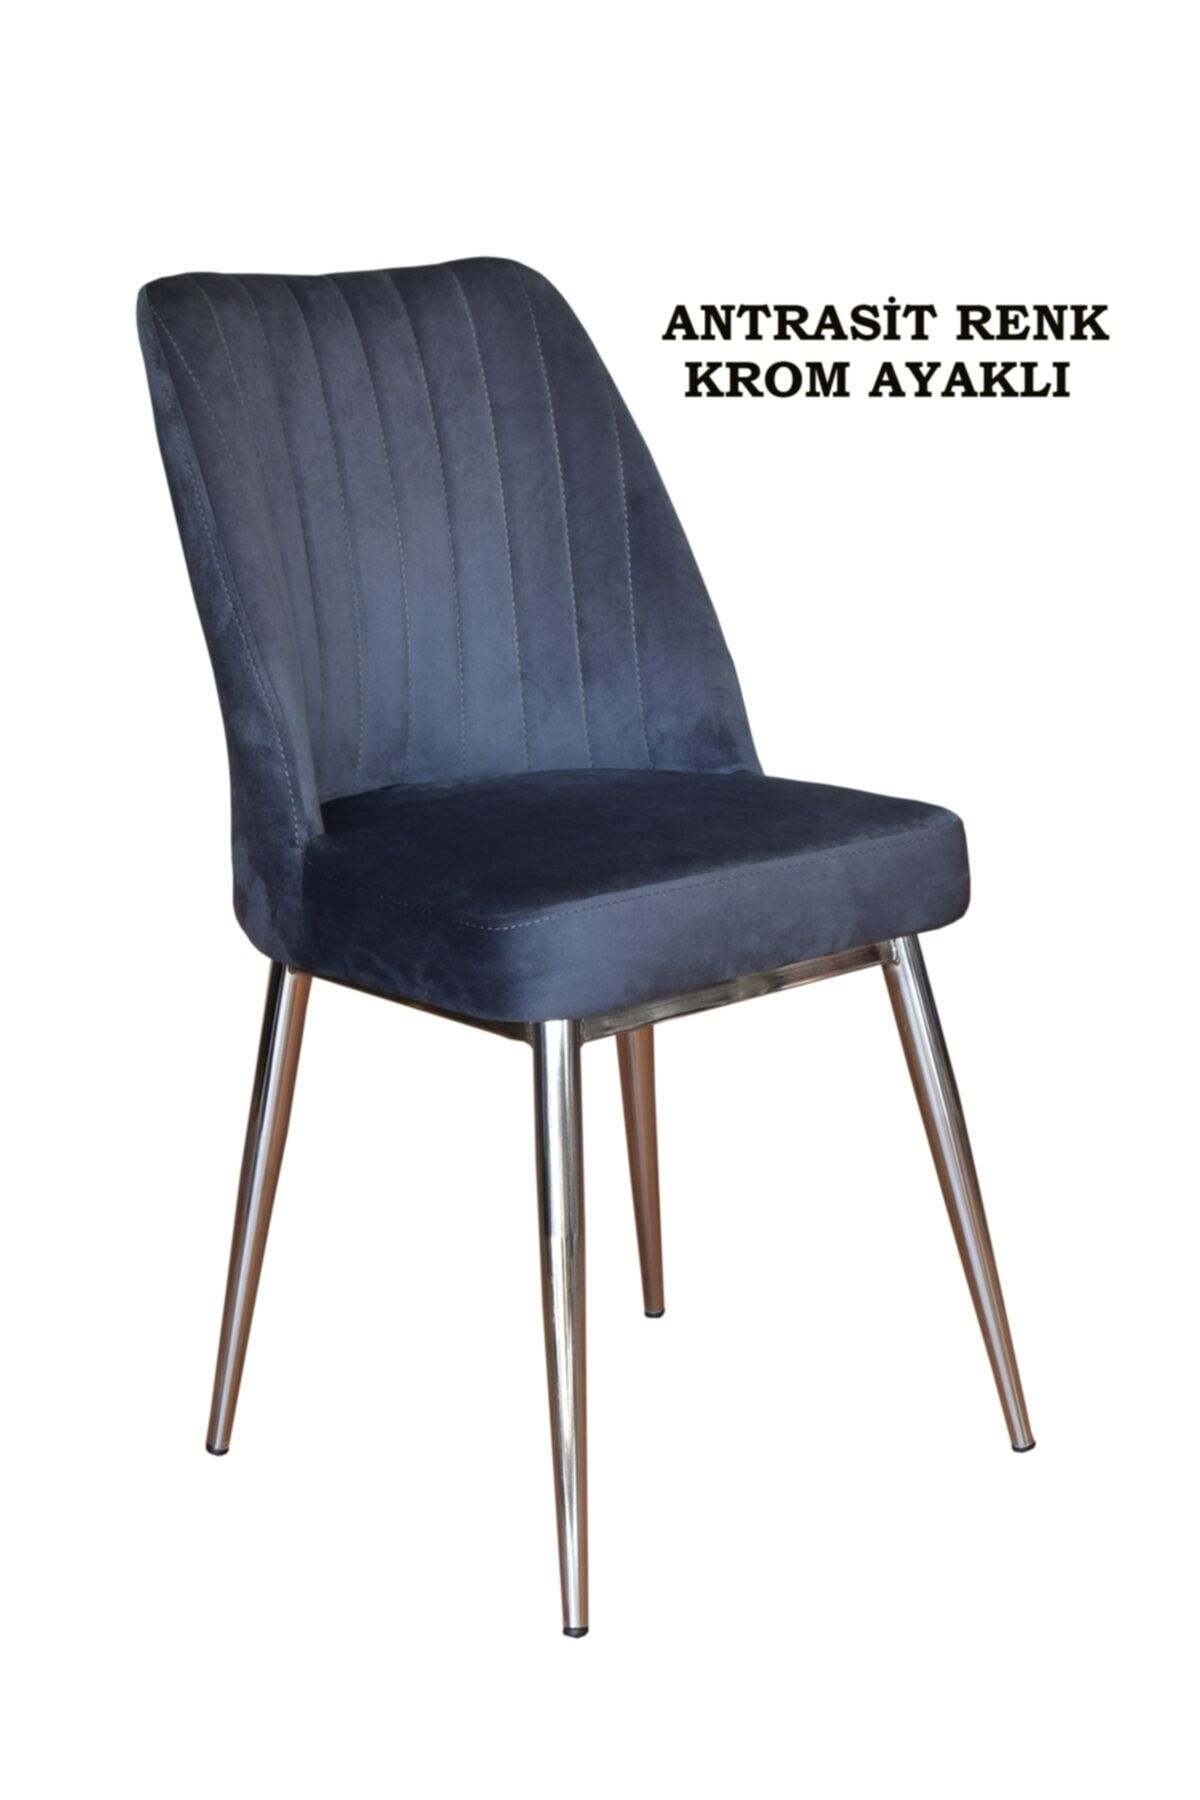 Ankhira Elit Sandalye, Mutfak Ve Salon Sandalyesi, Silinebilir Antrasit Renk Kumaş, Krom Ayaklı